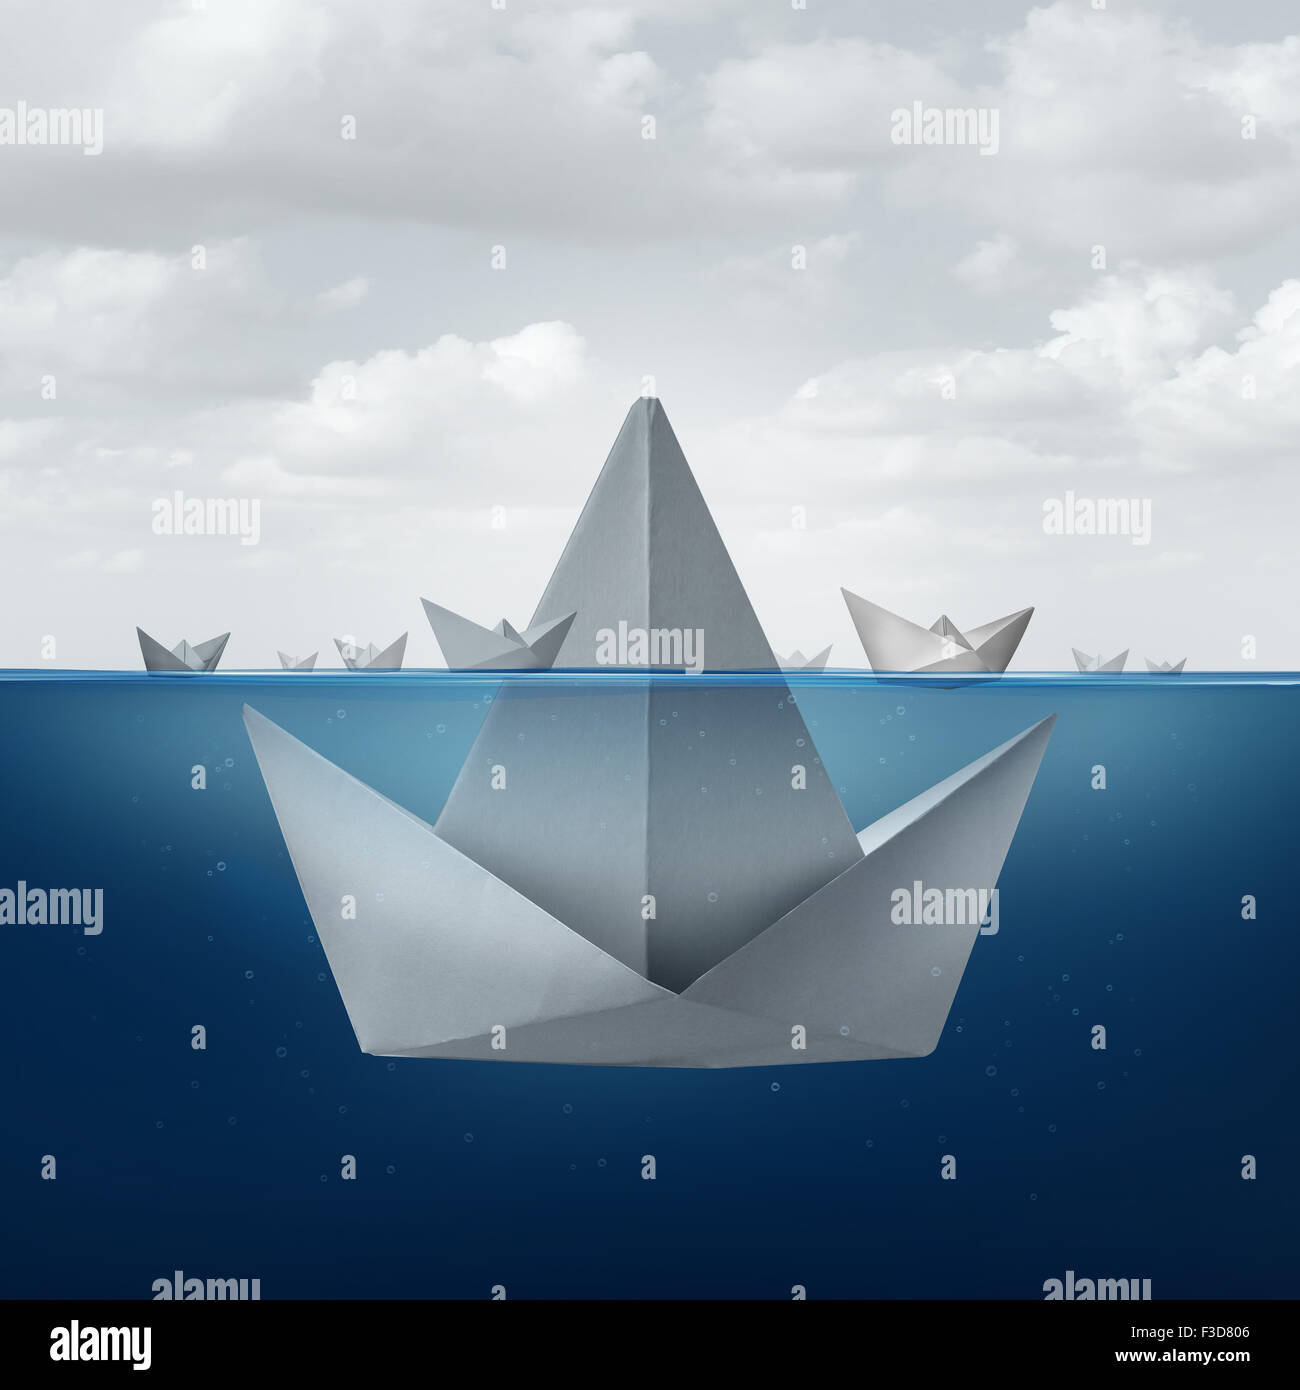 Business ignoranza e paura nozione come un gruppo di carta barche galleggianti intorno alla punta di un gigantesco origami barca vela cercando come un ice berg forma come una metafora per la concorrenza occulta e corporate inganno. Foto Stock